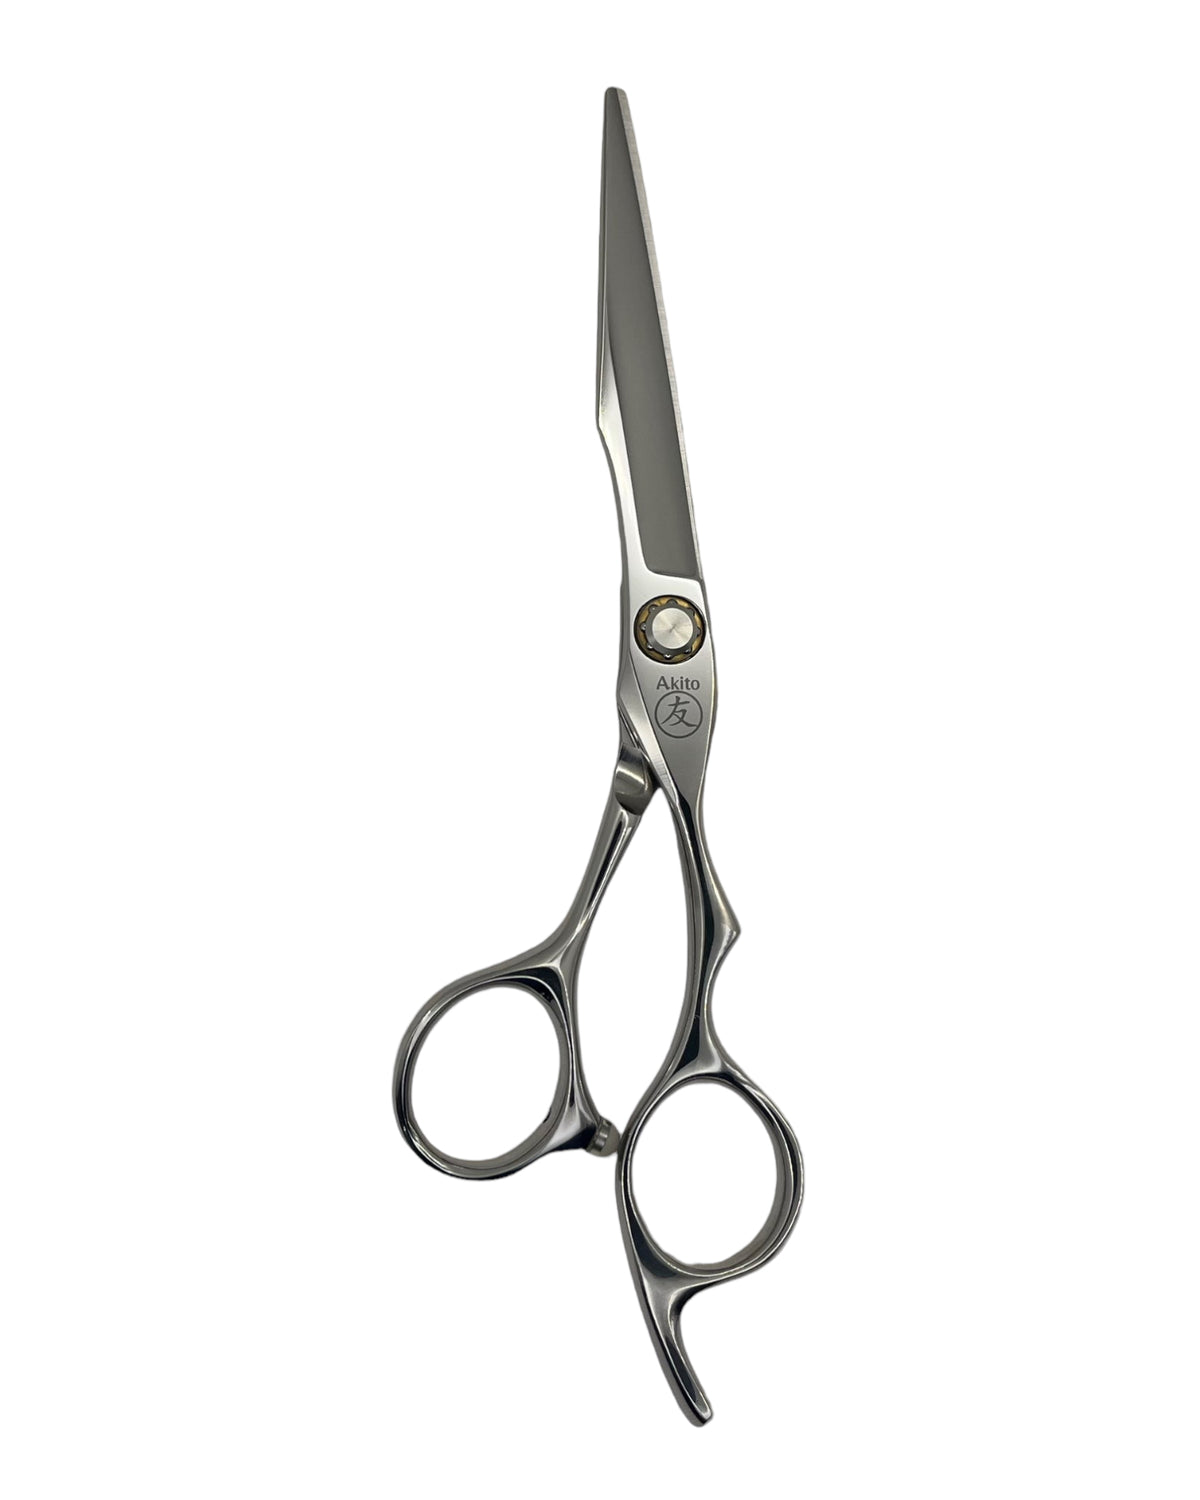 Katana 6.0 inch hair scissors